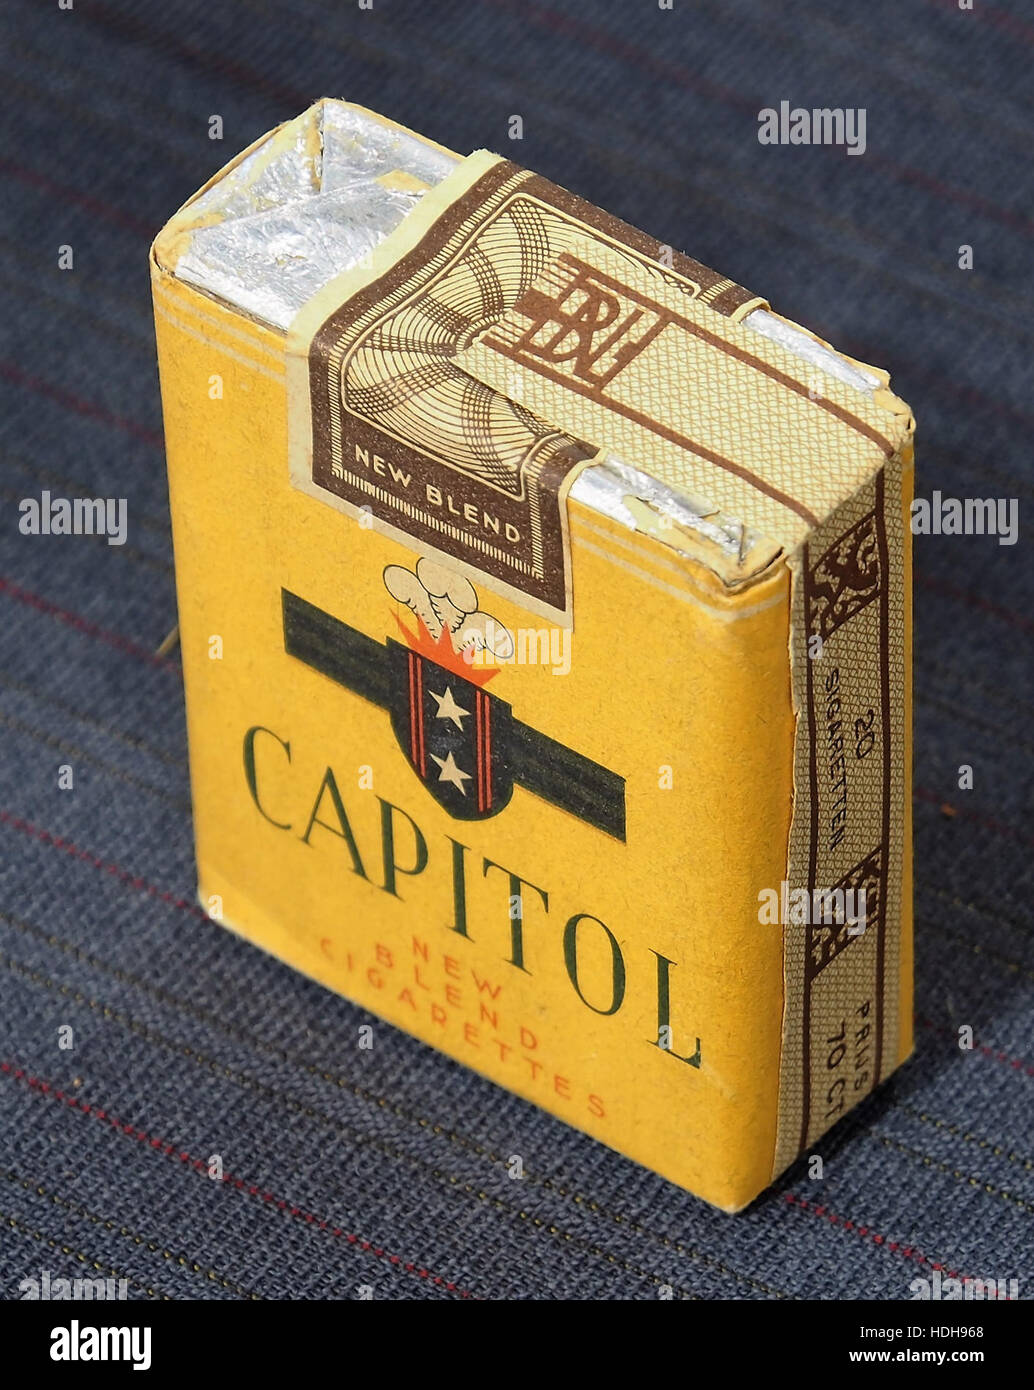 Capitol Zigaretten packen pic3 Stockfoto